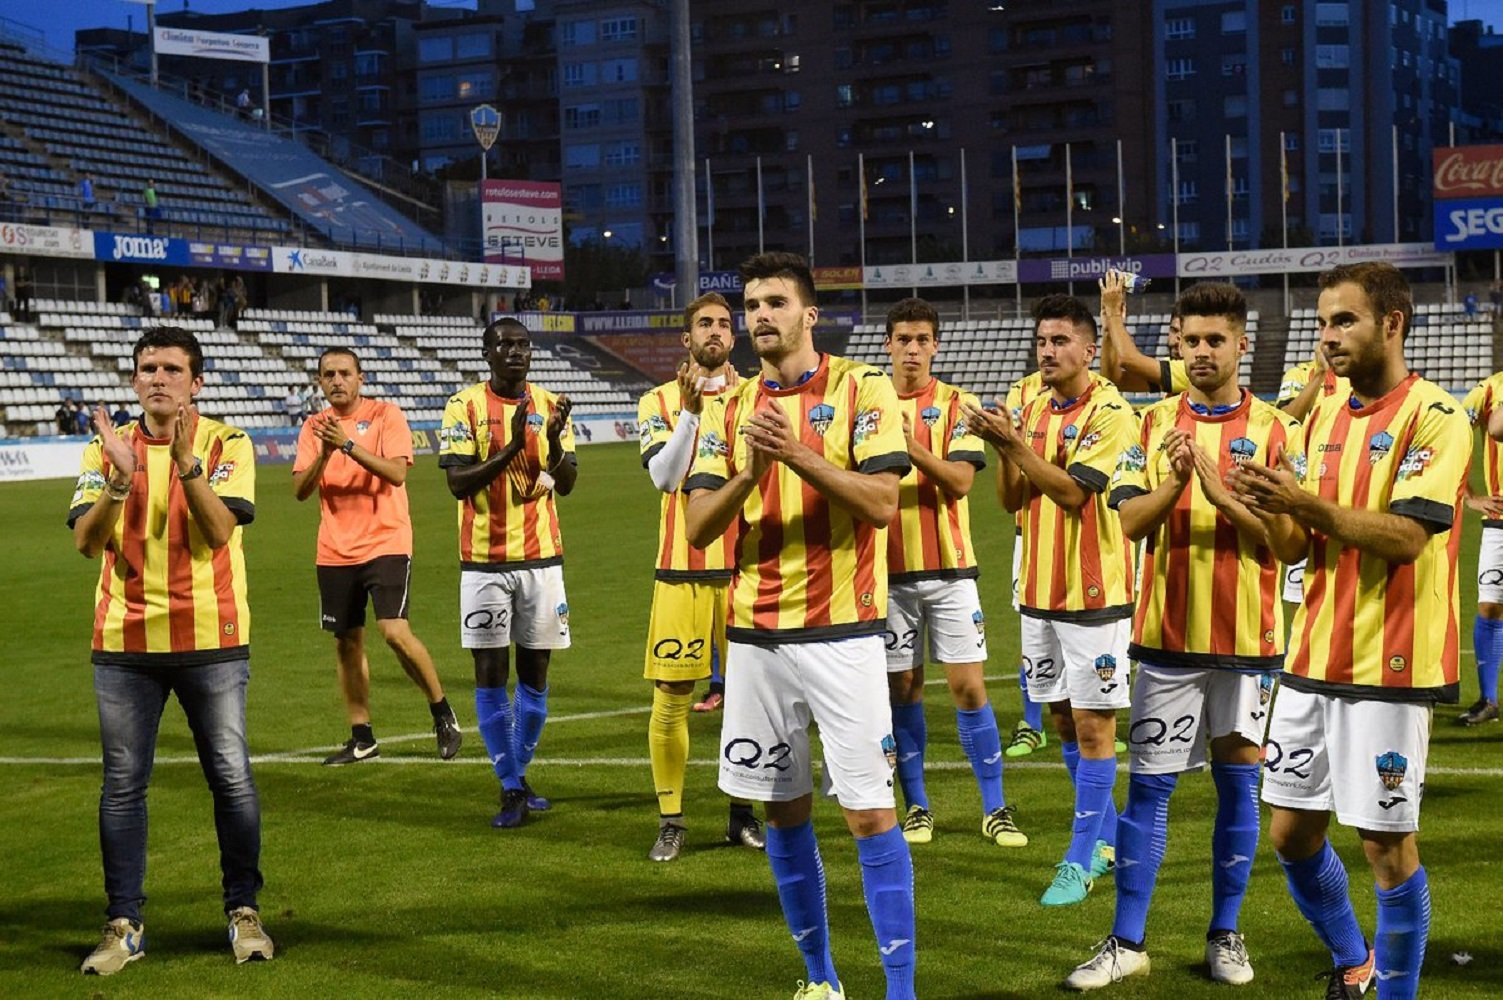 La Federación Española prohíbe al Lleida jugar con la camiseta de la senyera